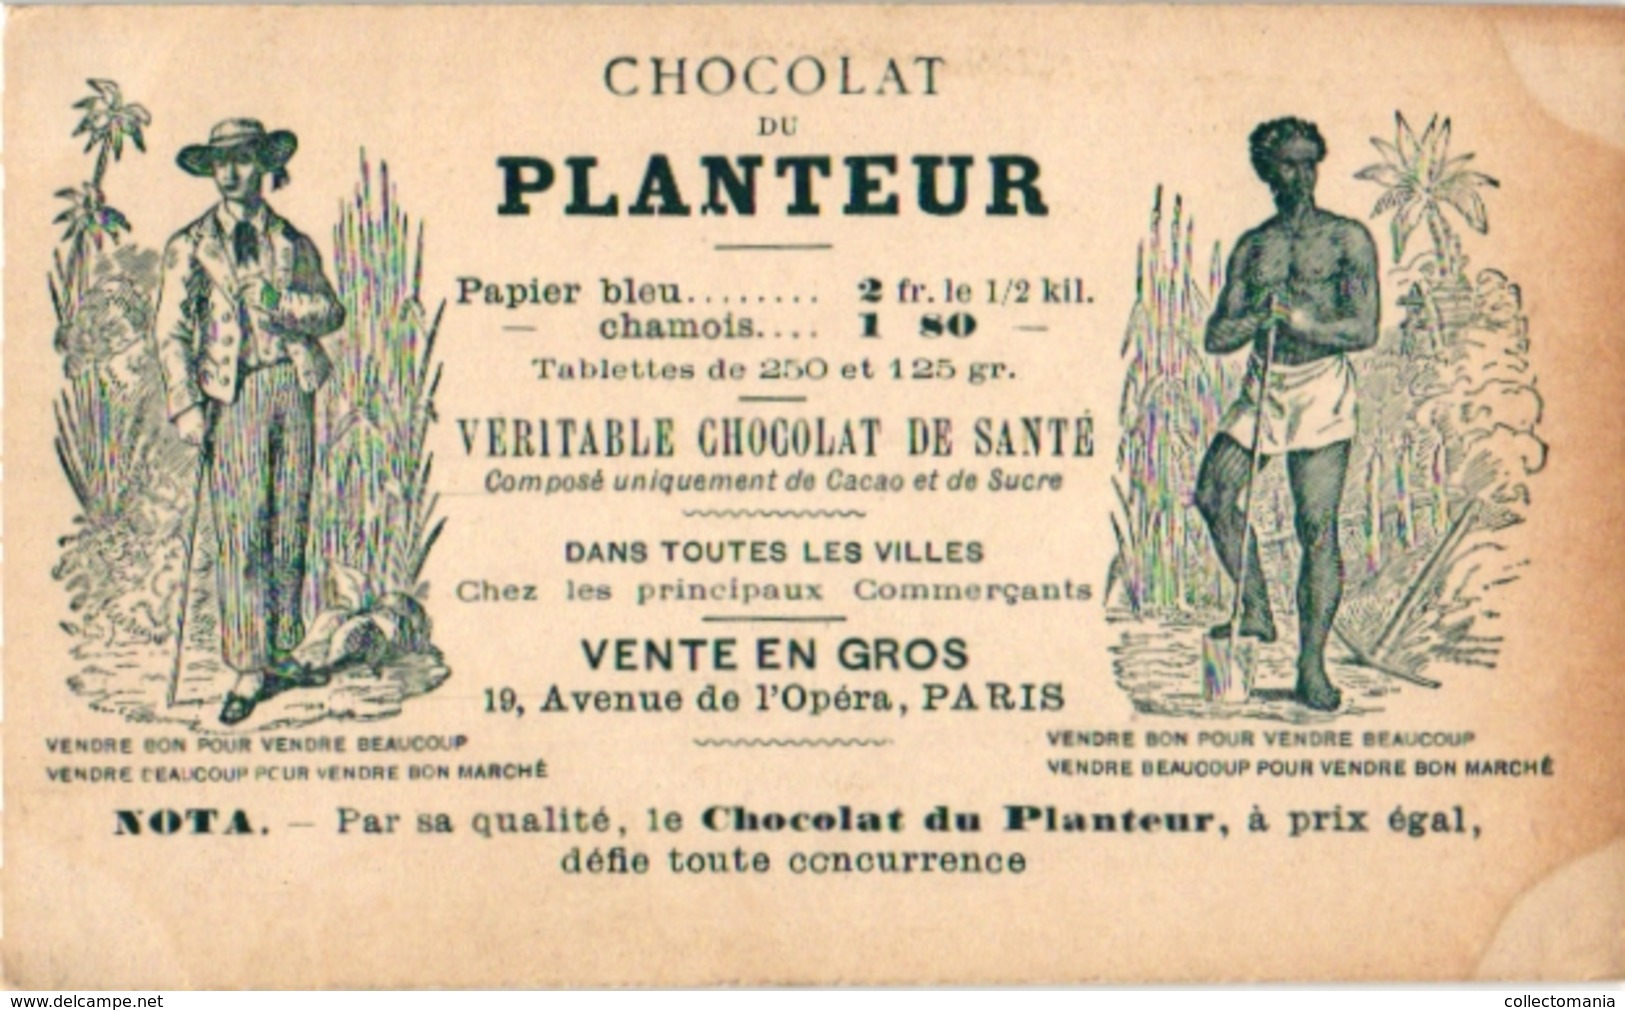 21 Cards C1900 Pub Chocolat du Planteur Recettes Utiles Moyen de... Imp de la Compagnie Coloniale